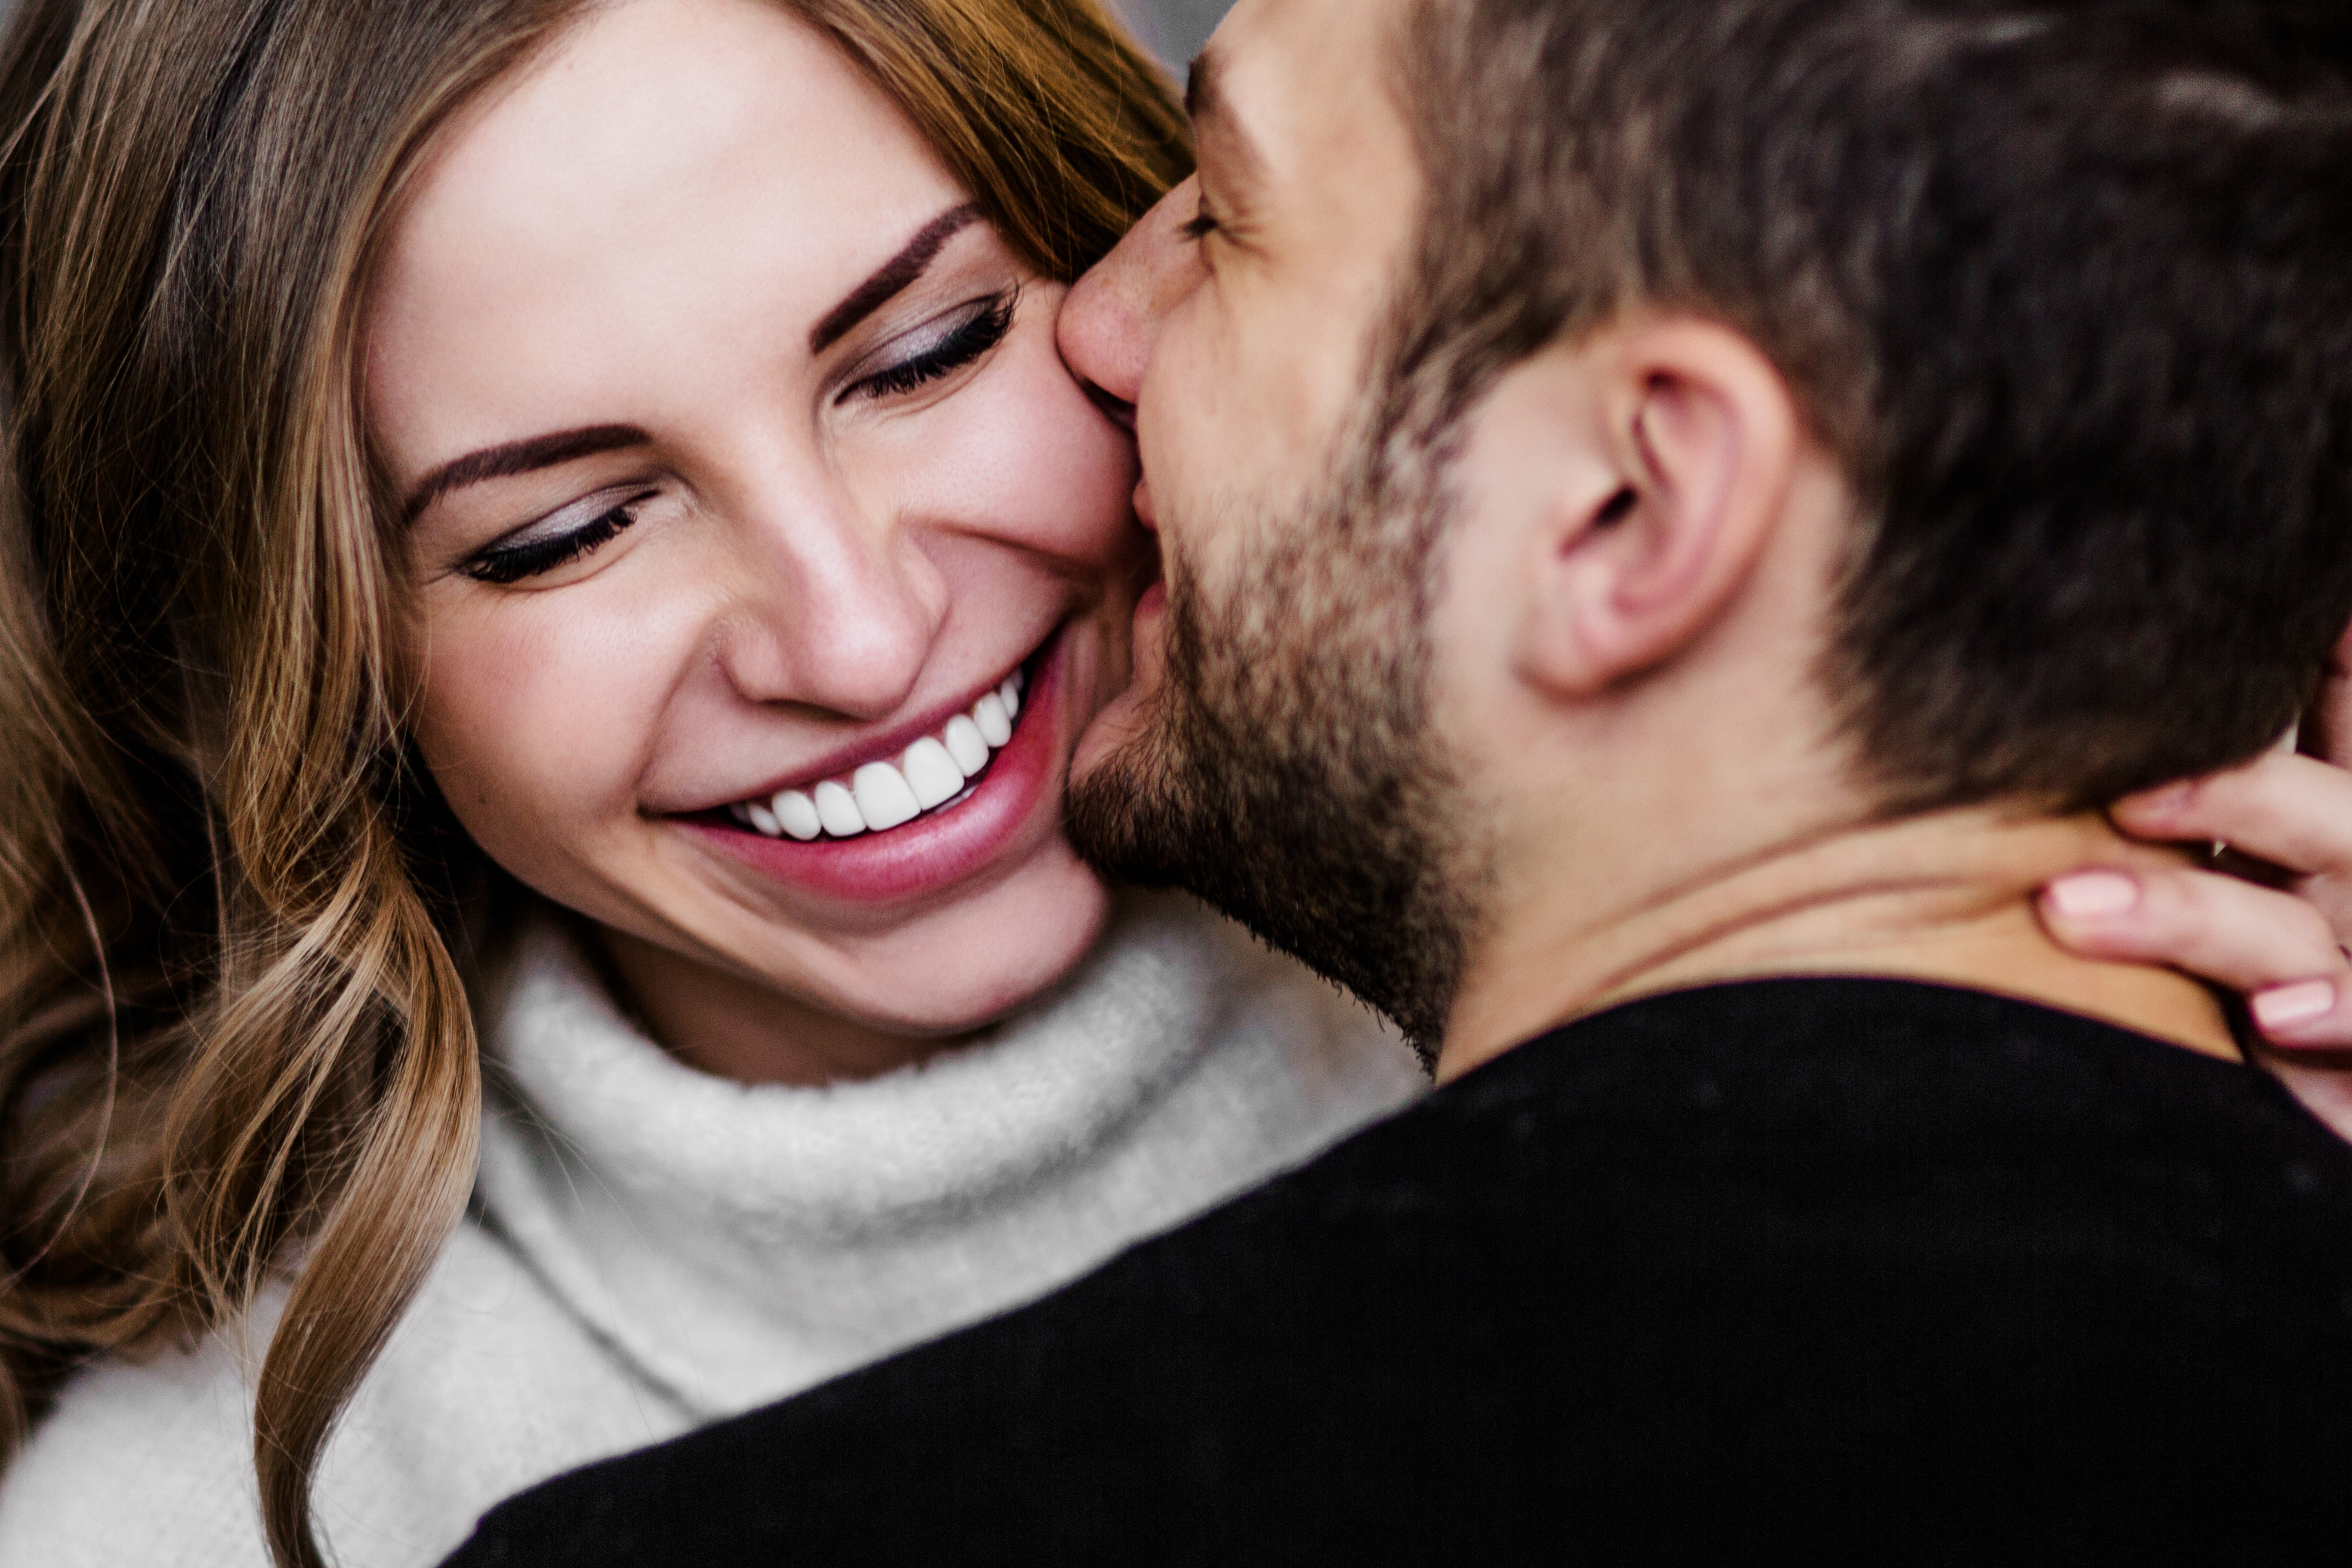 Un homme embrasse sa partenaire souriante sur la joue | Source : Shutterstock